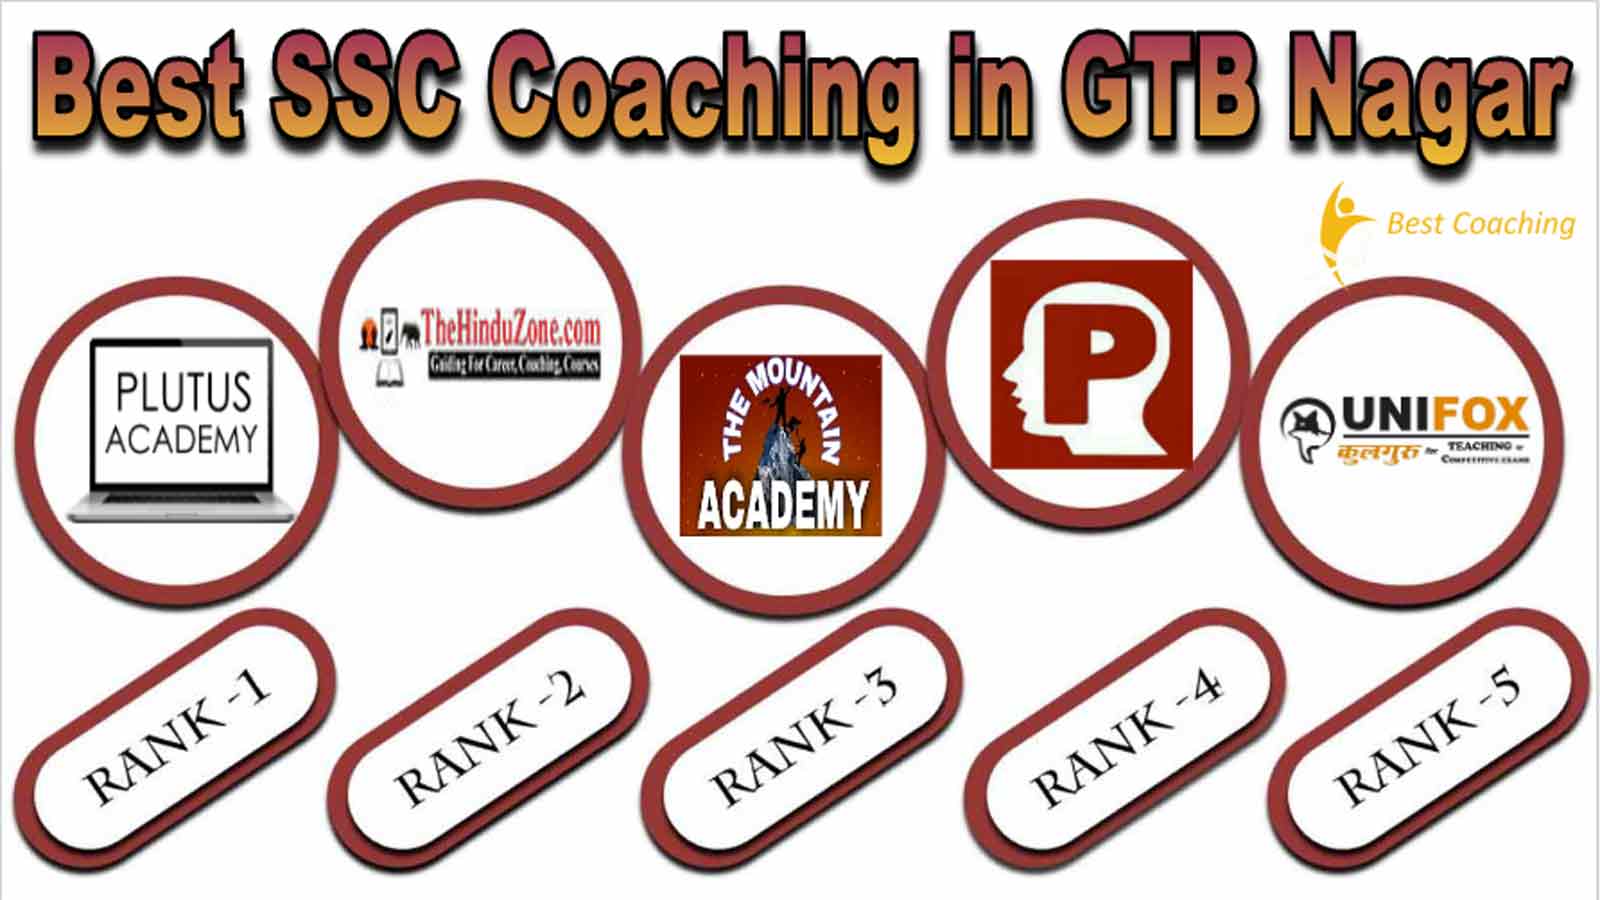 Best SSC Coaching in GTB Nagar